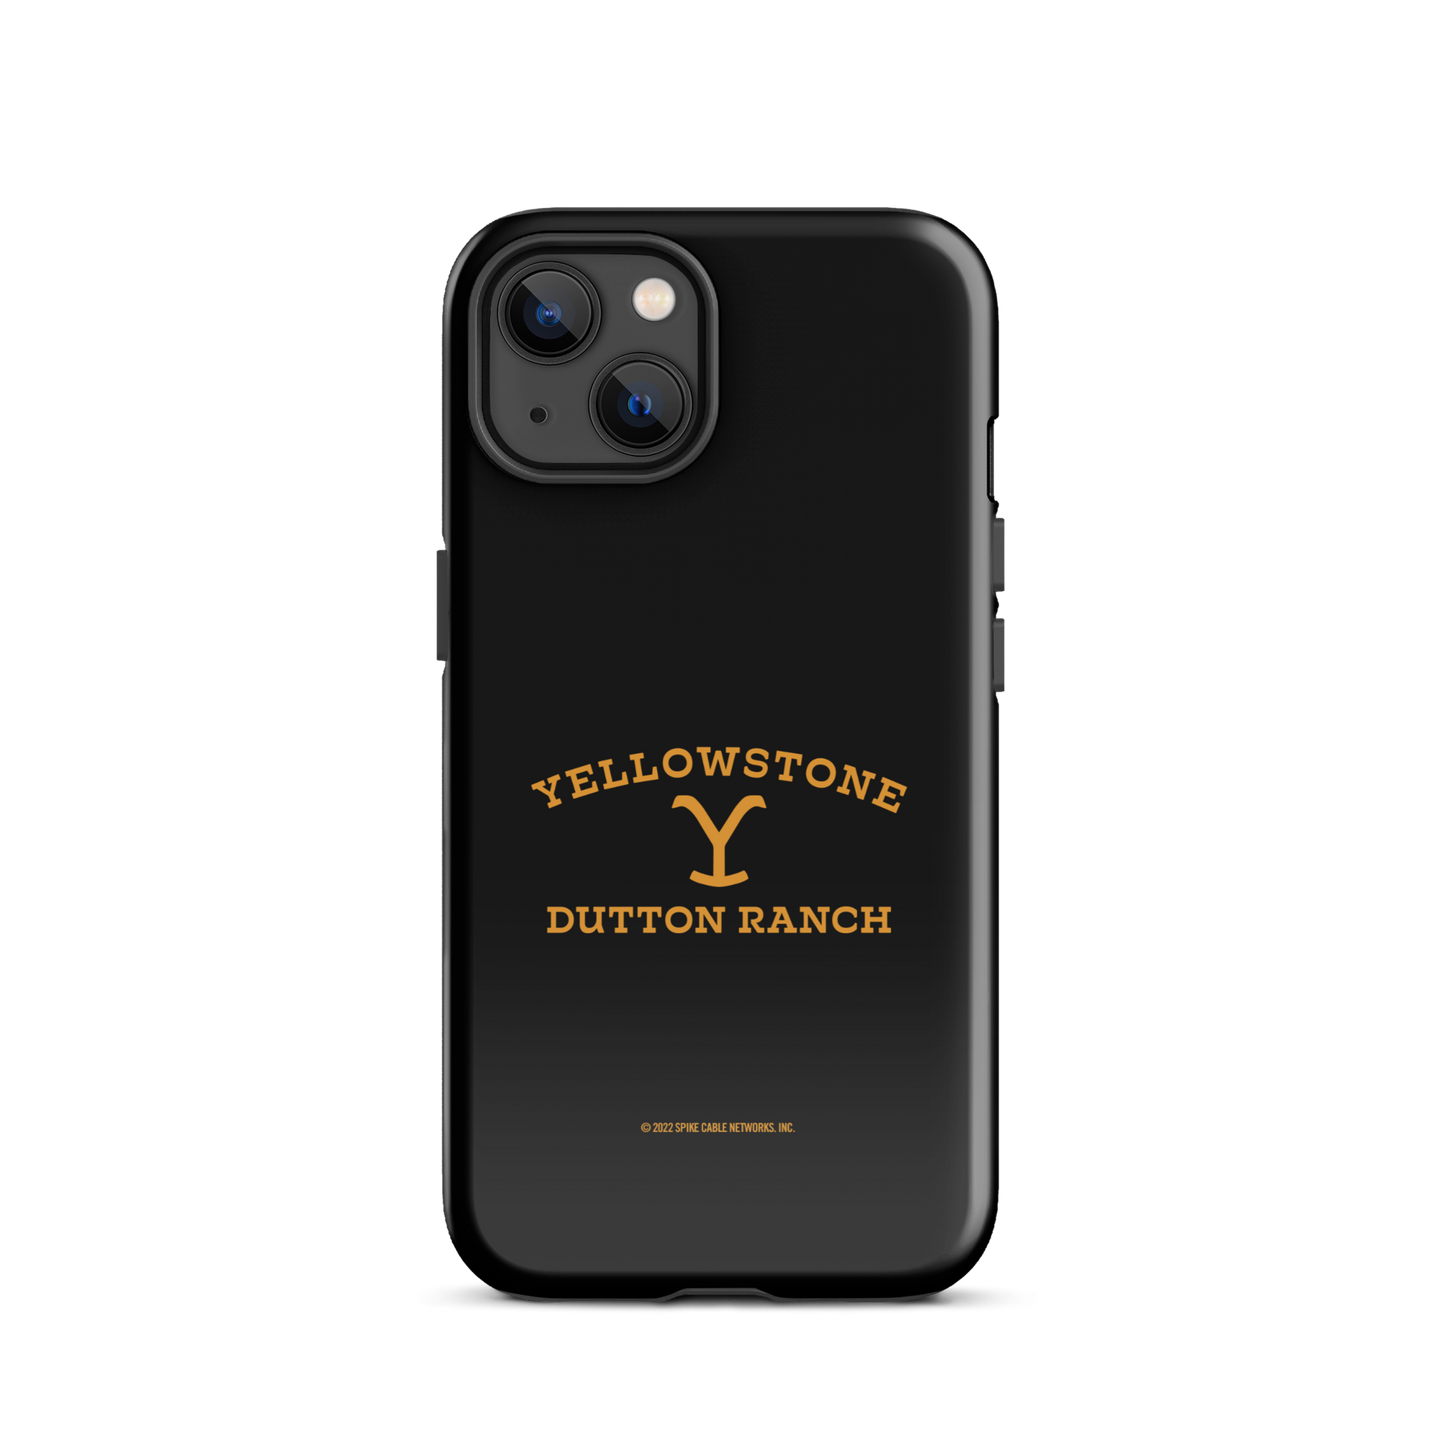 Yellowstone Étui résistant pour téléphone portable Dutton Ranch - iPhone